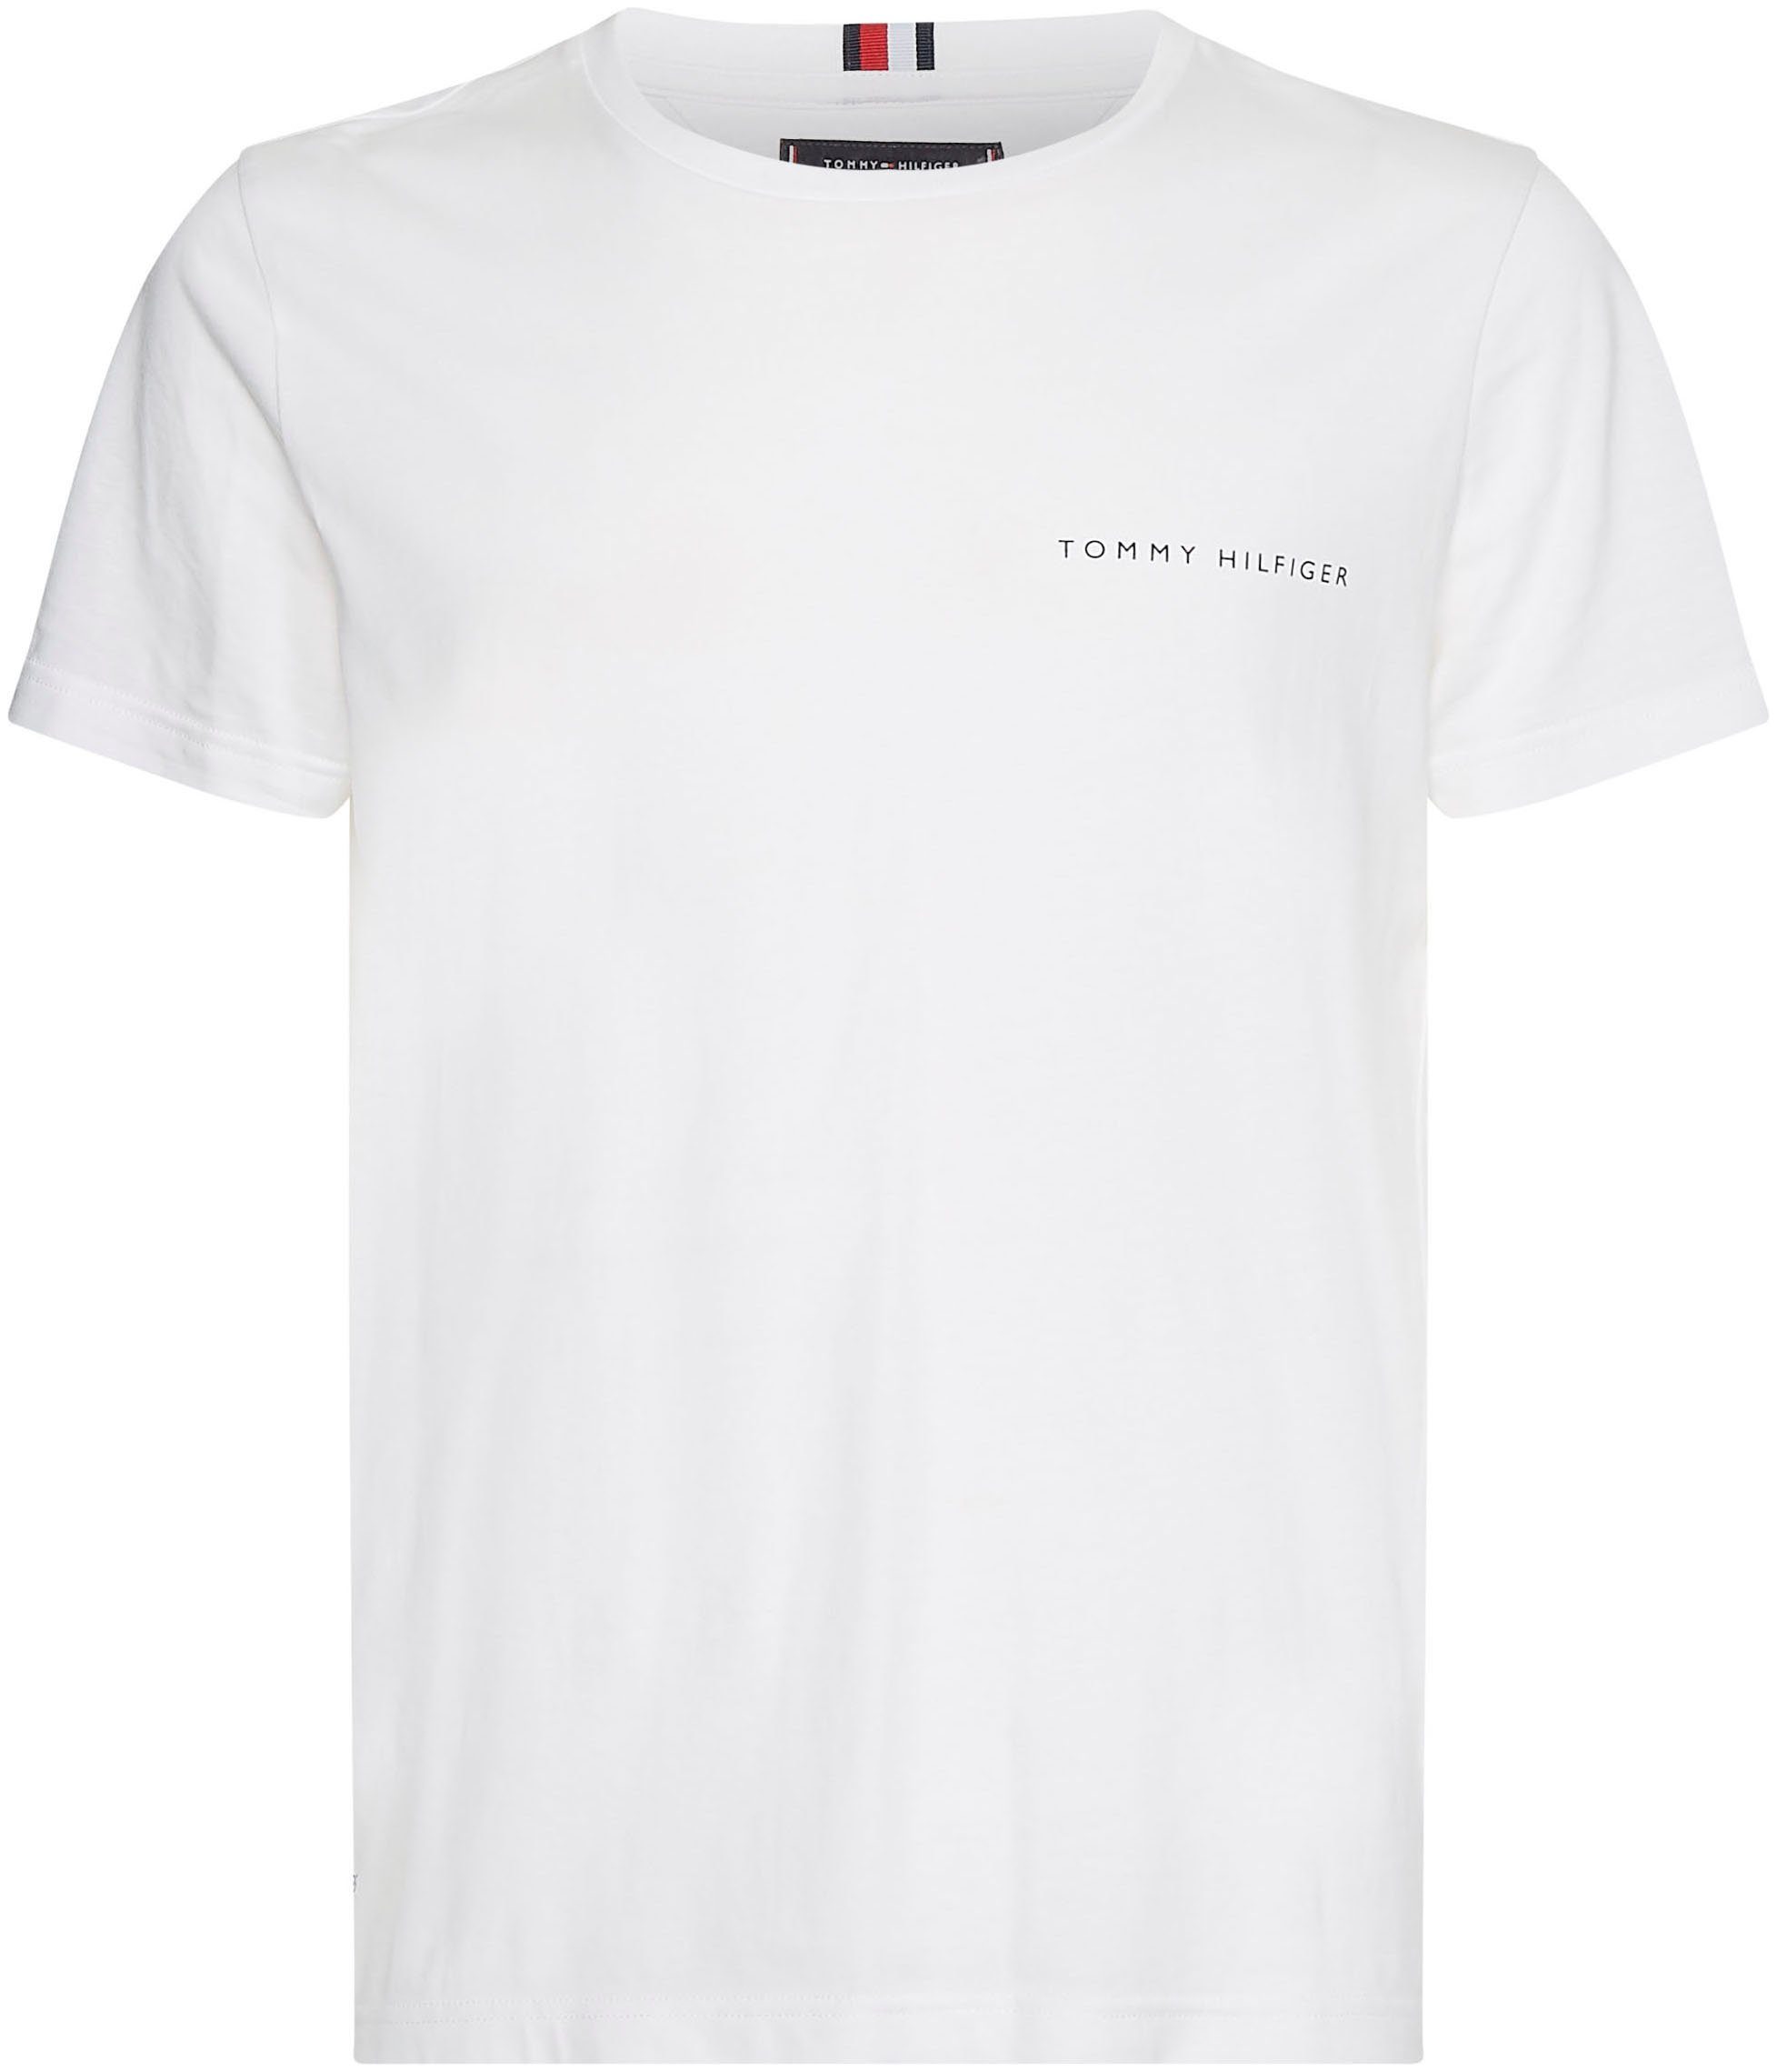 PLACEMENT im TEE Hilfiger Tommy MULTI T-Shirt schlichten weiß Design